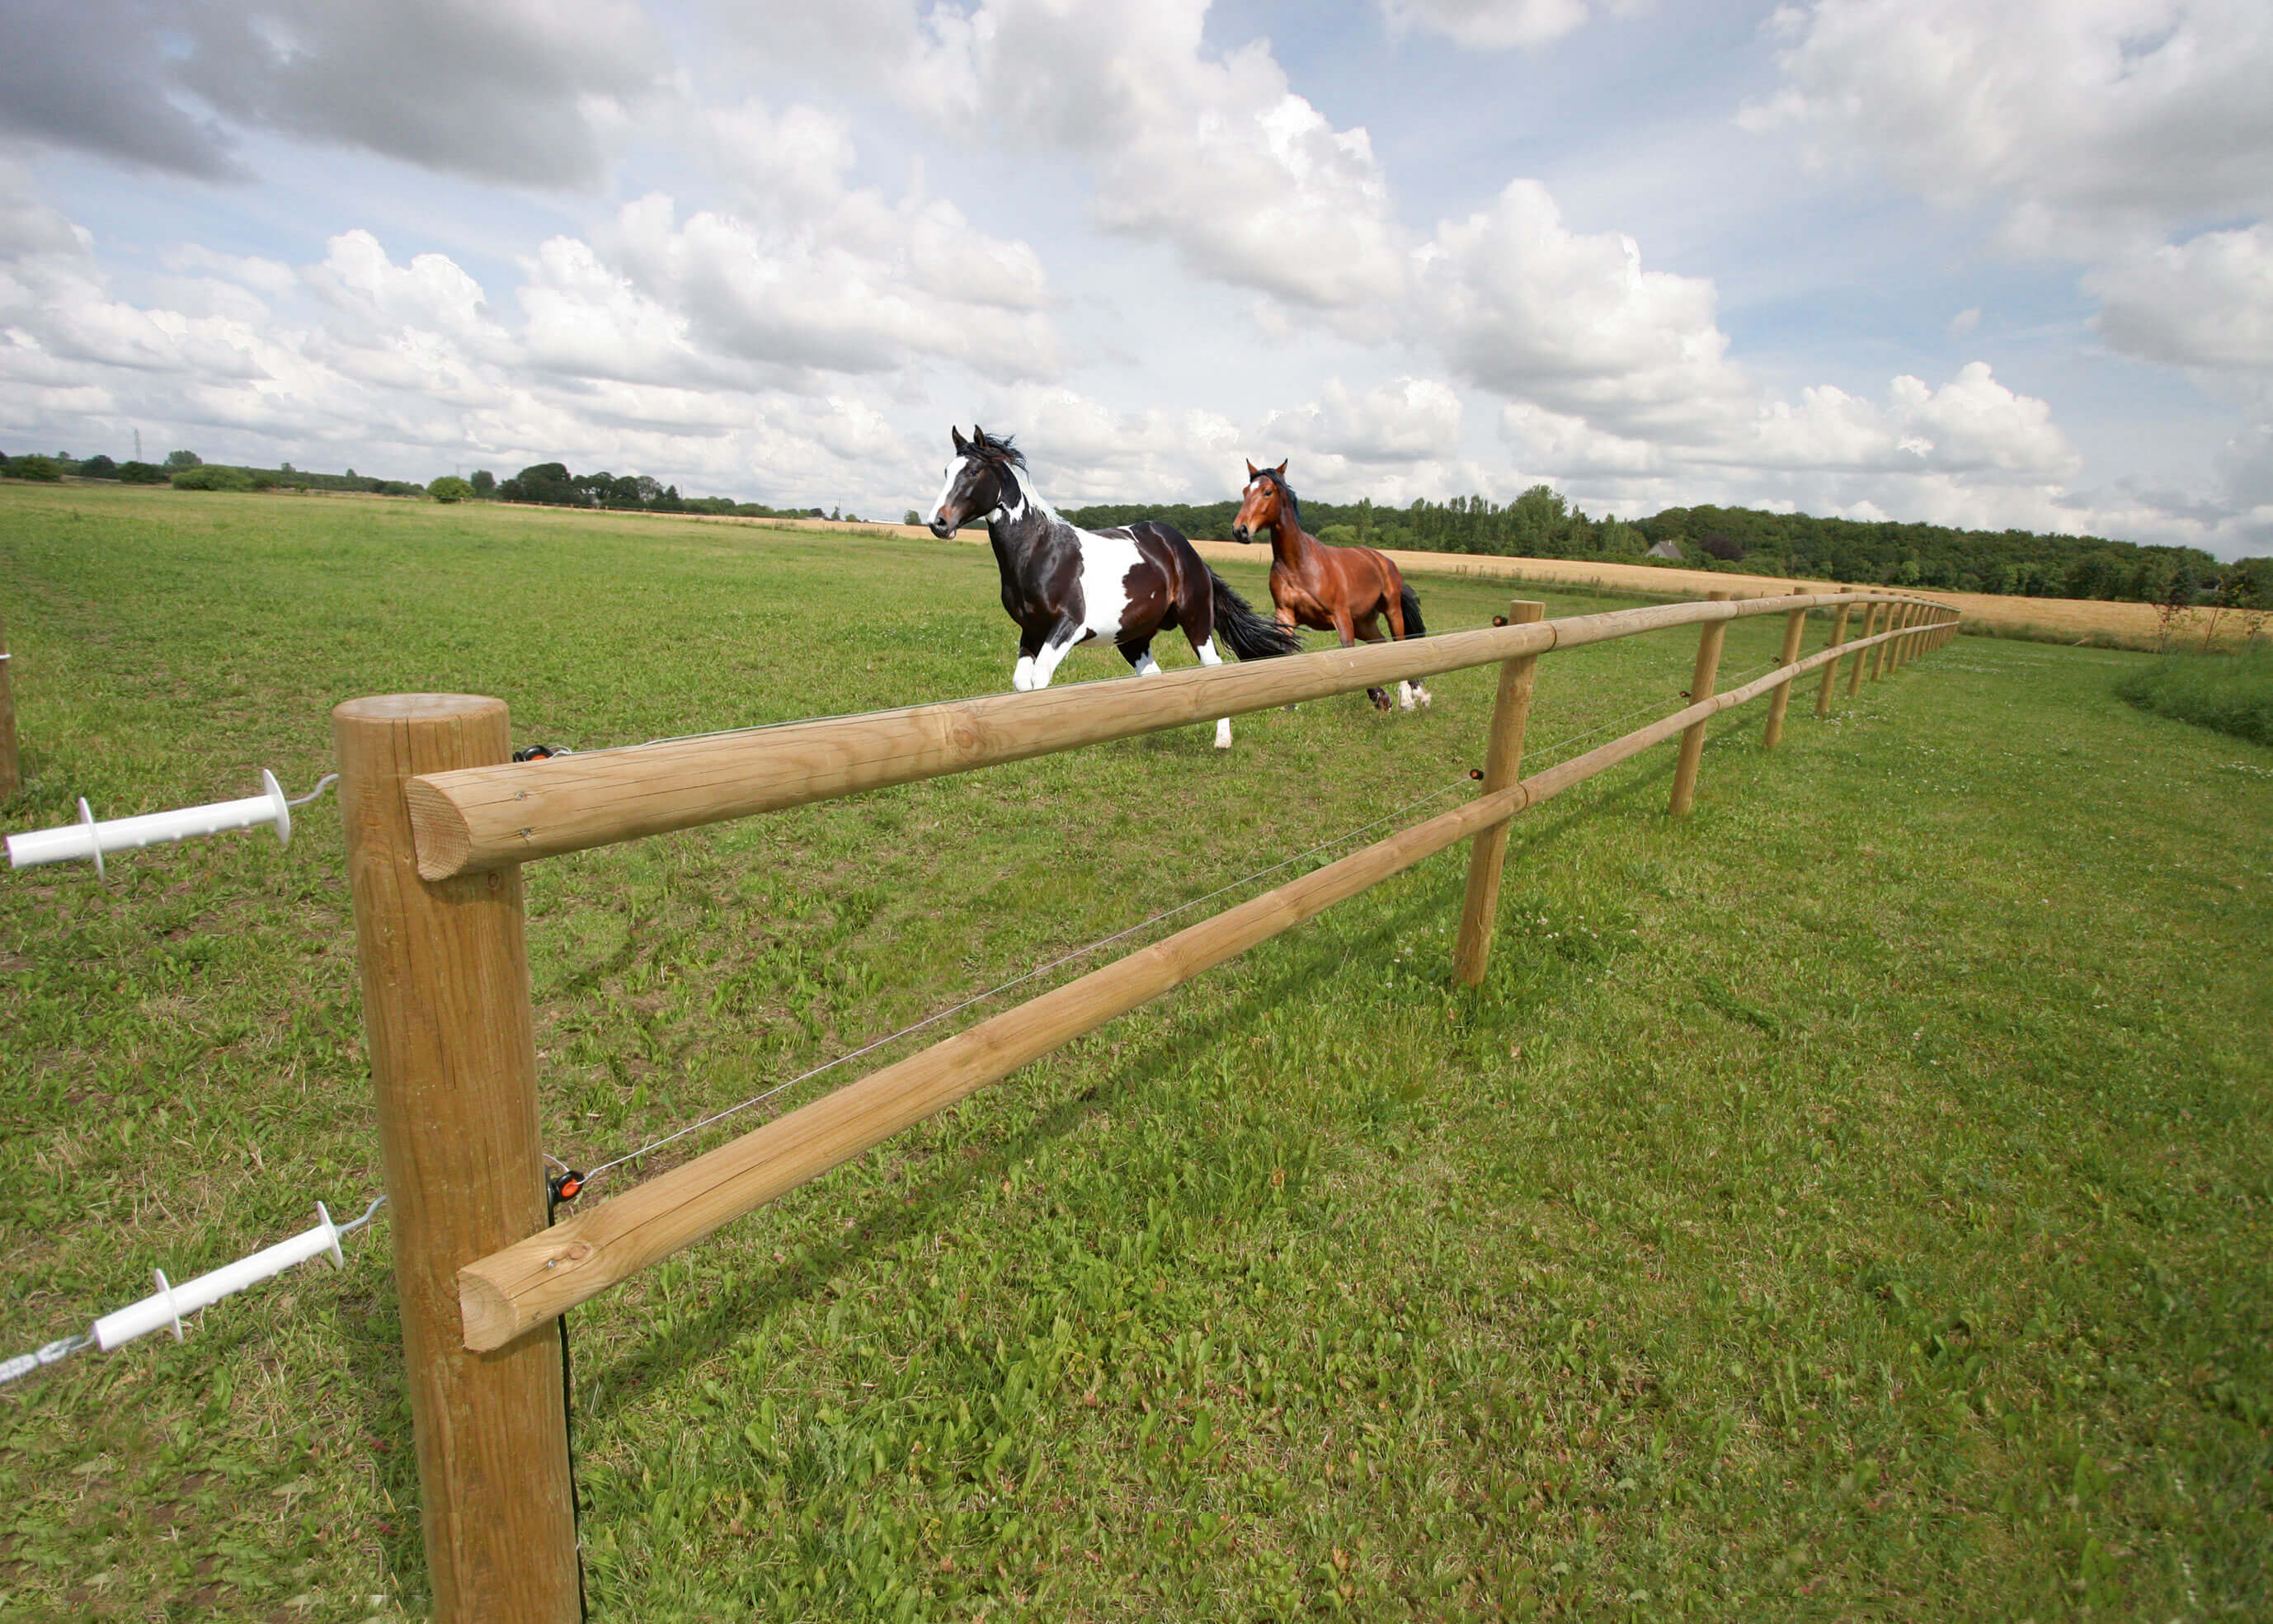 Två hästar galopperar bredvid varandra i sin hage. Ett staket av trä avgränsar paddocken.